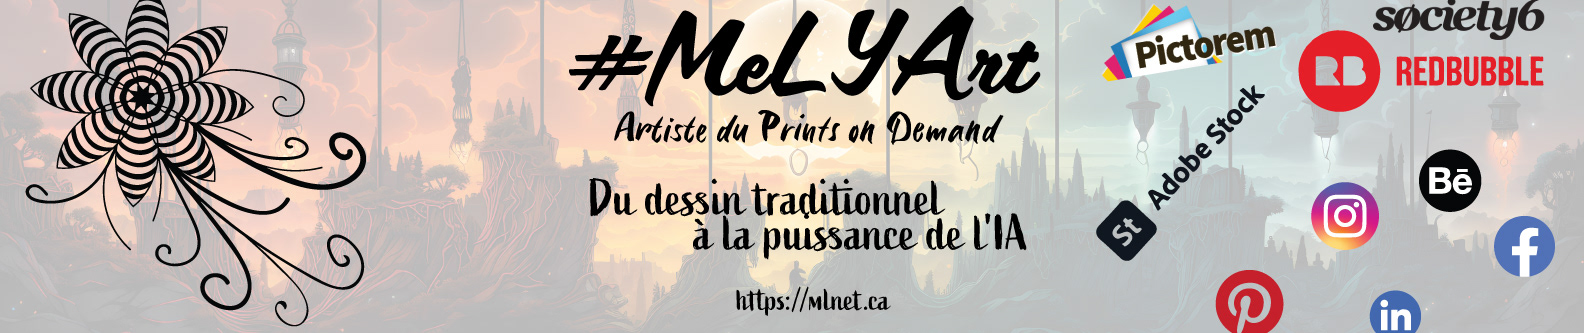 Mélissa Lefebvre's profile banner